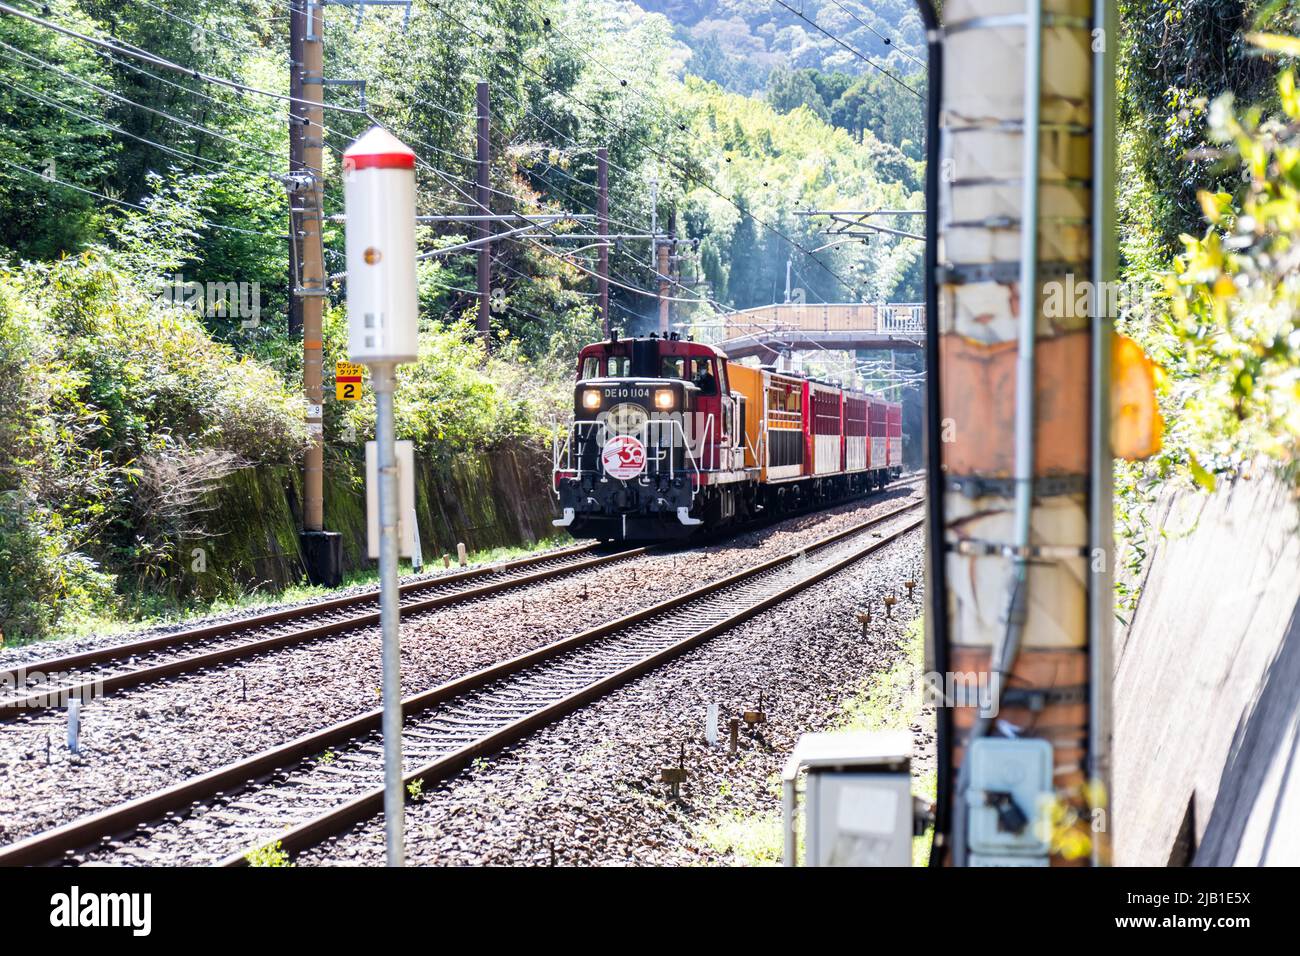 Romantischer Zug Von Sagano. Sie verläuft auf einer 25-minütigen Strecke von der Station Saga torokko zur Station Kameoka torokko, der landschaftlichen Schönheit der Hozukyo-Schlucht auf ihrer Route Stockfoto